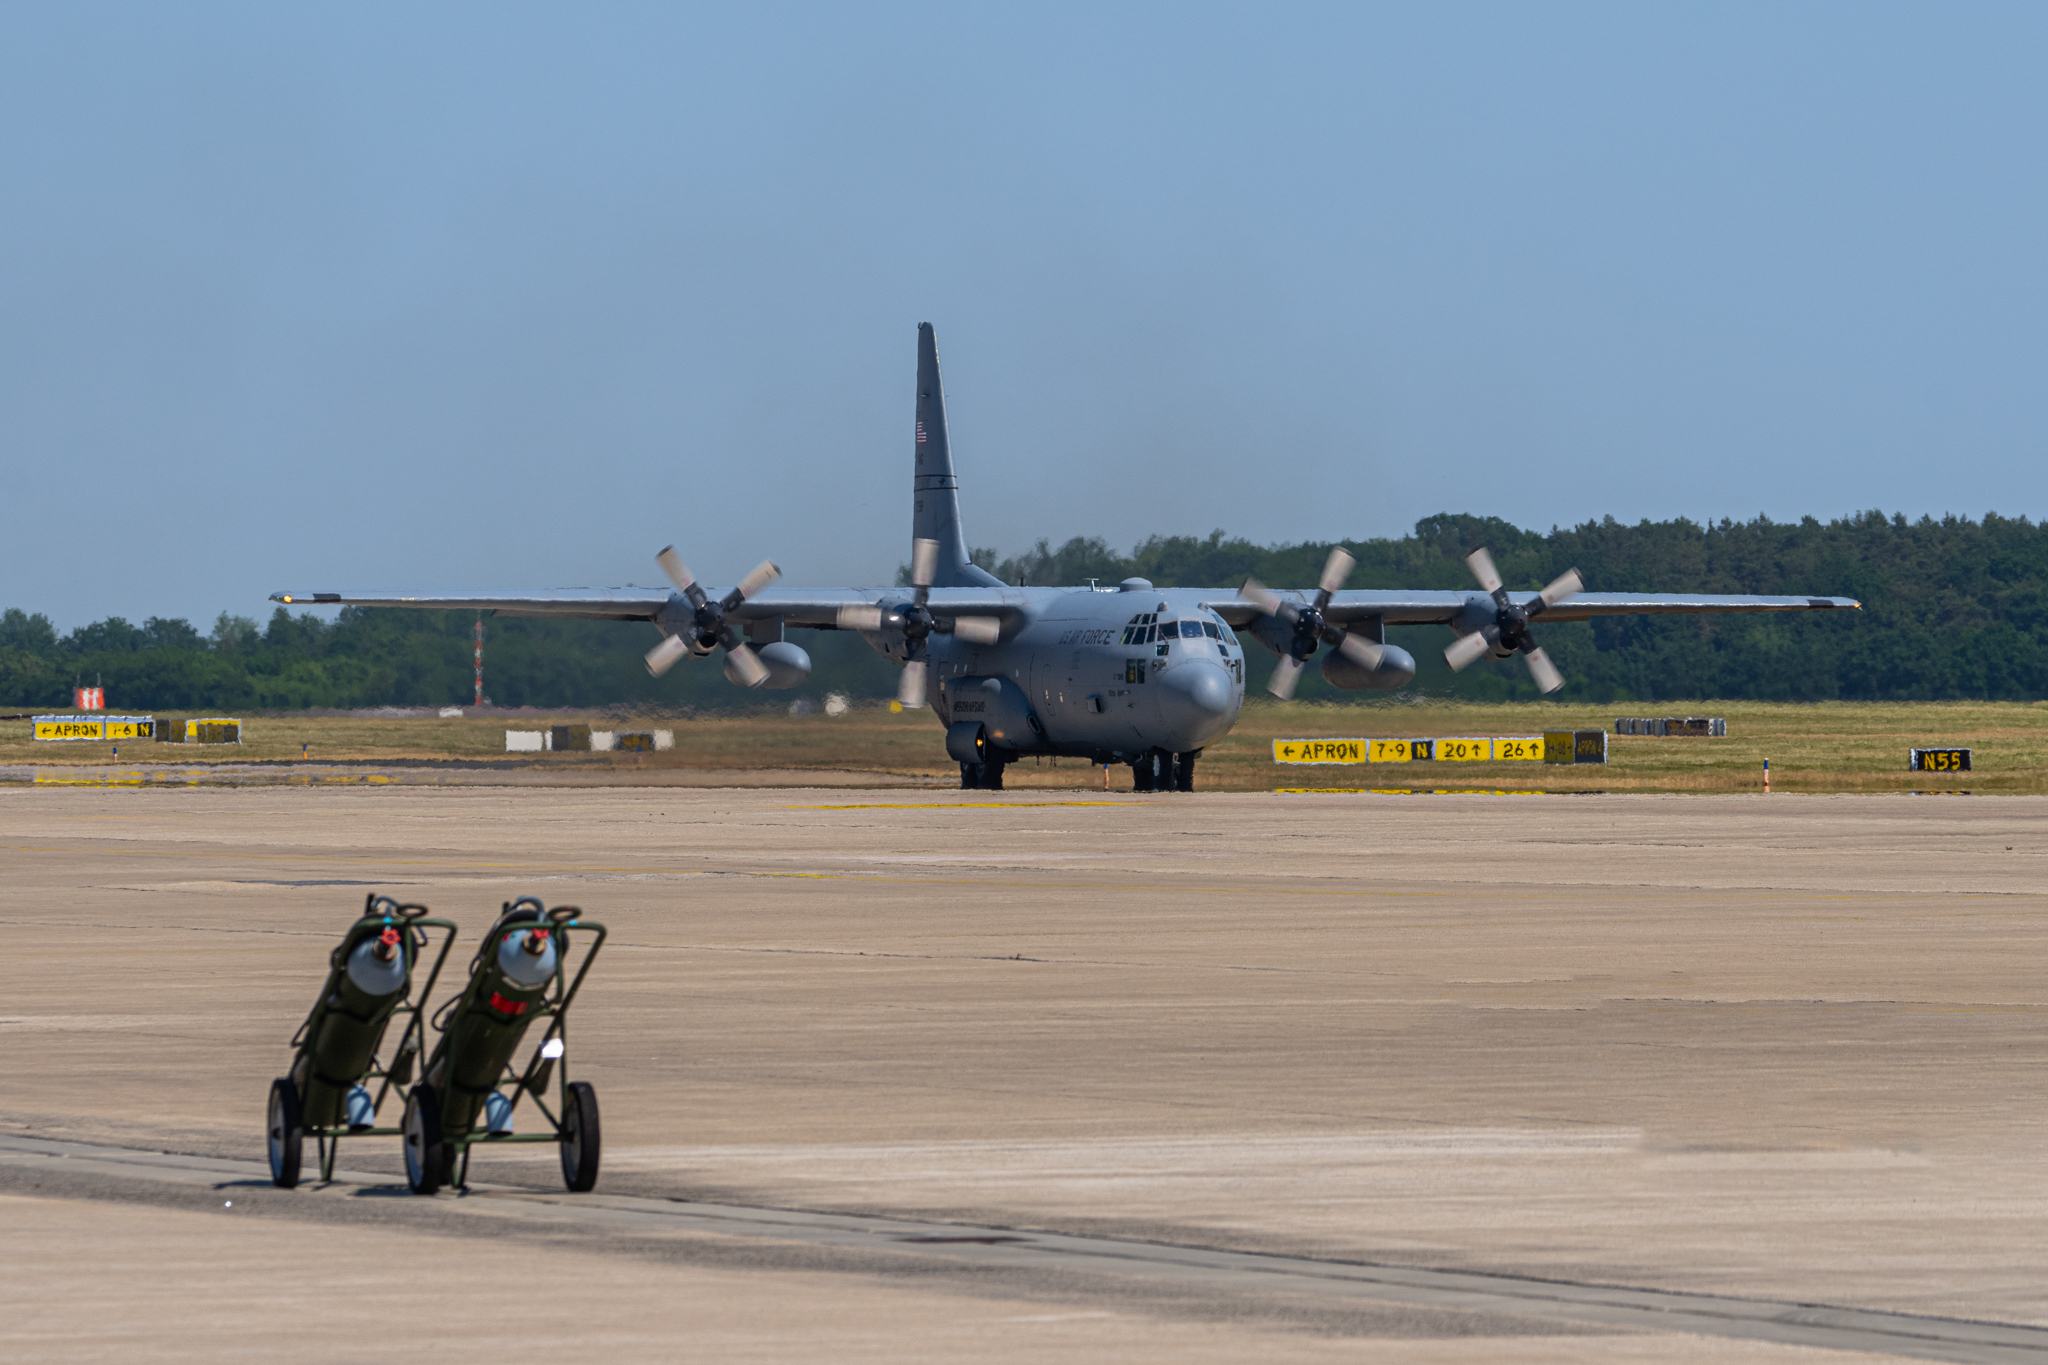 Aus den USA waren während der Übung 10 Transportflugzeuge Hercules C-130 stationiert. Hier auf dem Weg zum Start.